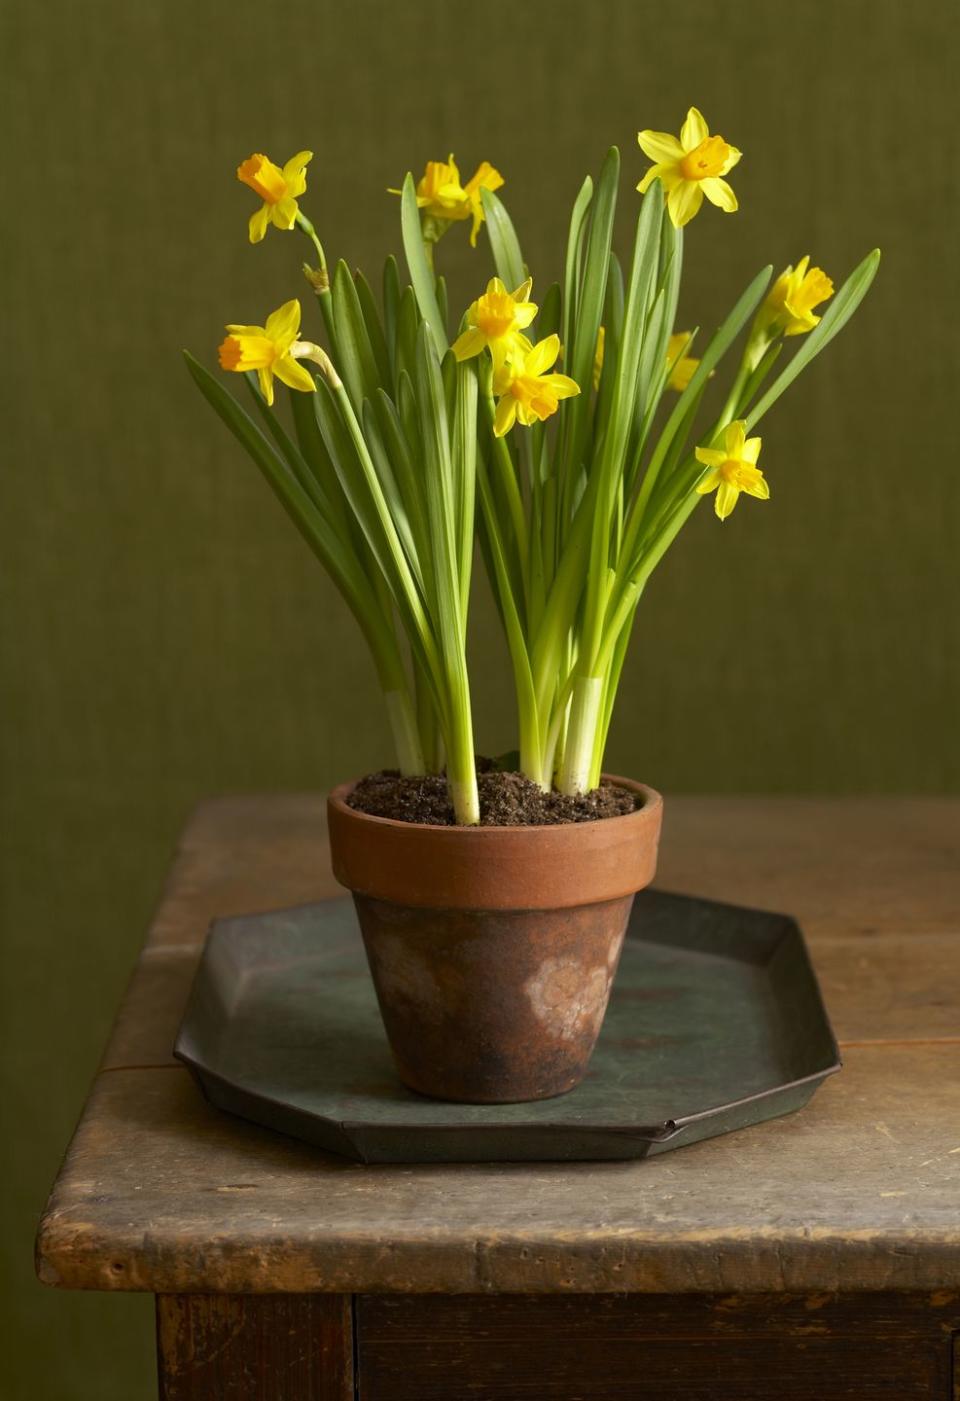 10) Daffodil